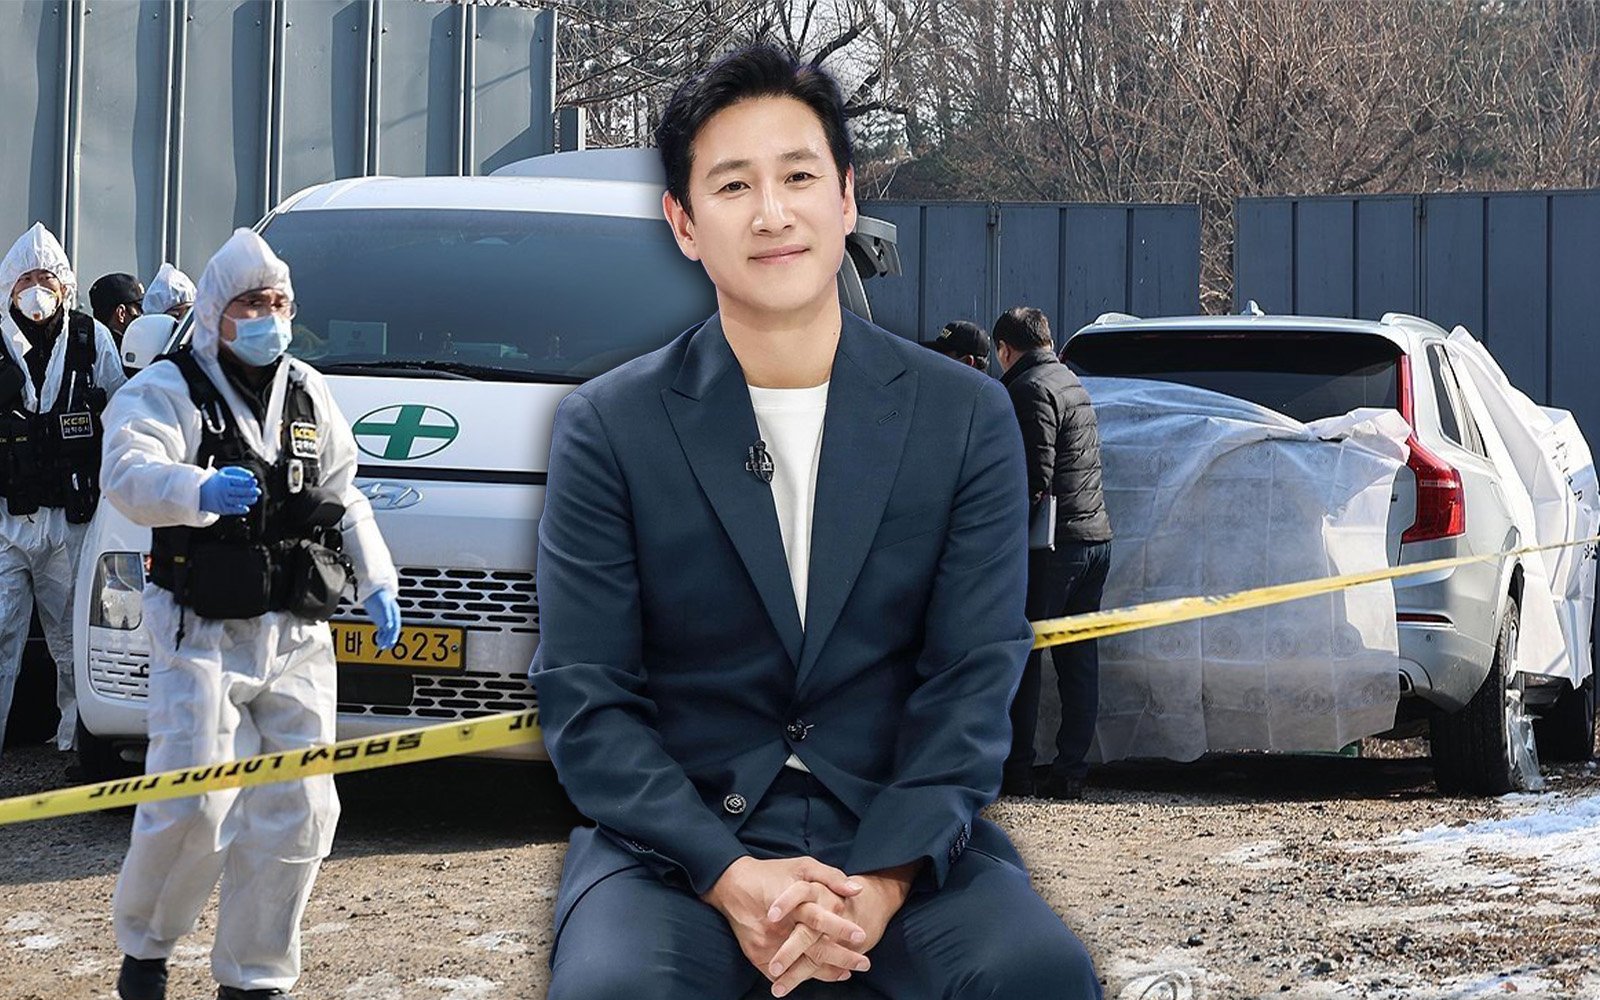 Cảnh sát tìm thấy Lee Sun Kyun thông qua định vị điện thoại, khẳng định không có thư tuyệt mệnh tại hiện trường- Ảnh 3.